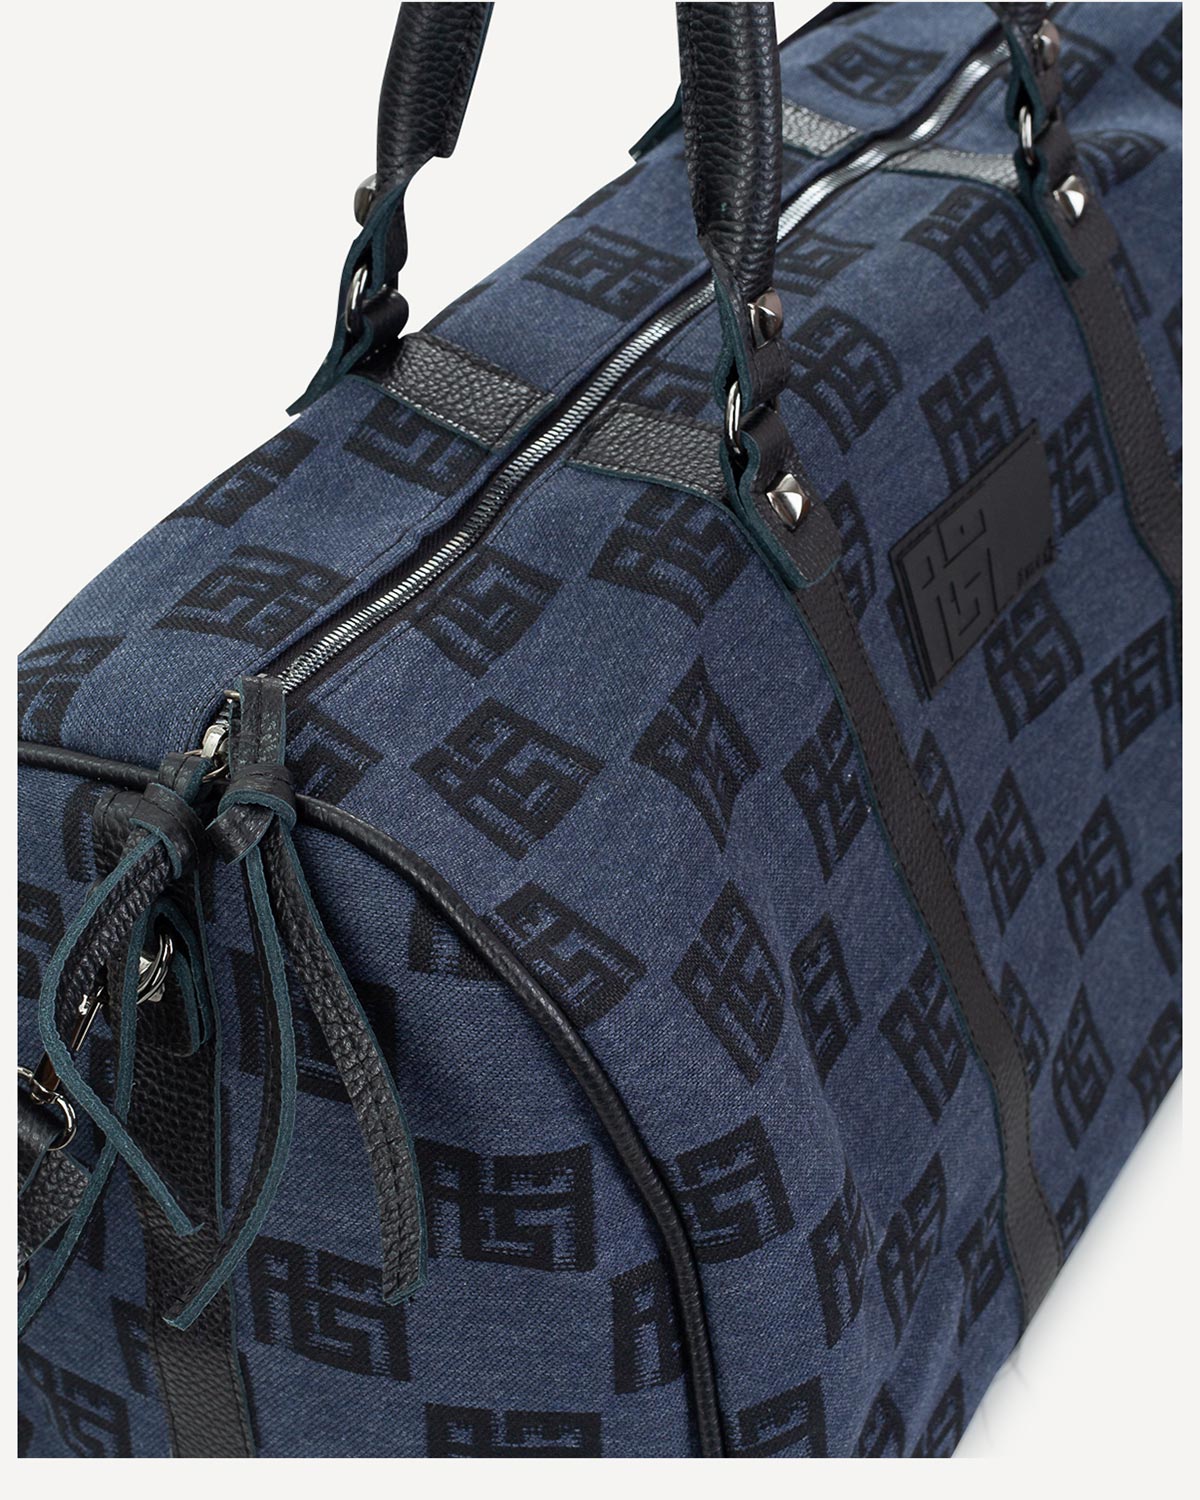 Γυναίκα - Travel Luggage - Ames Bags Μπλε